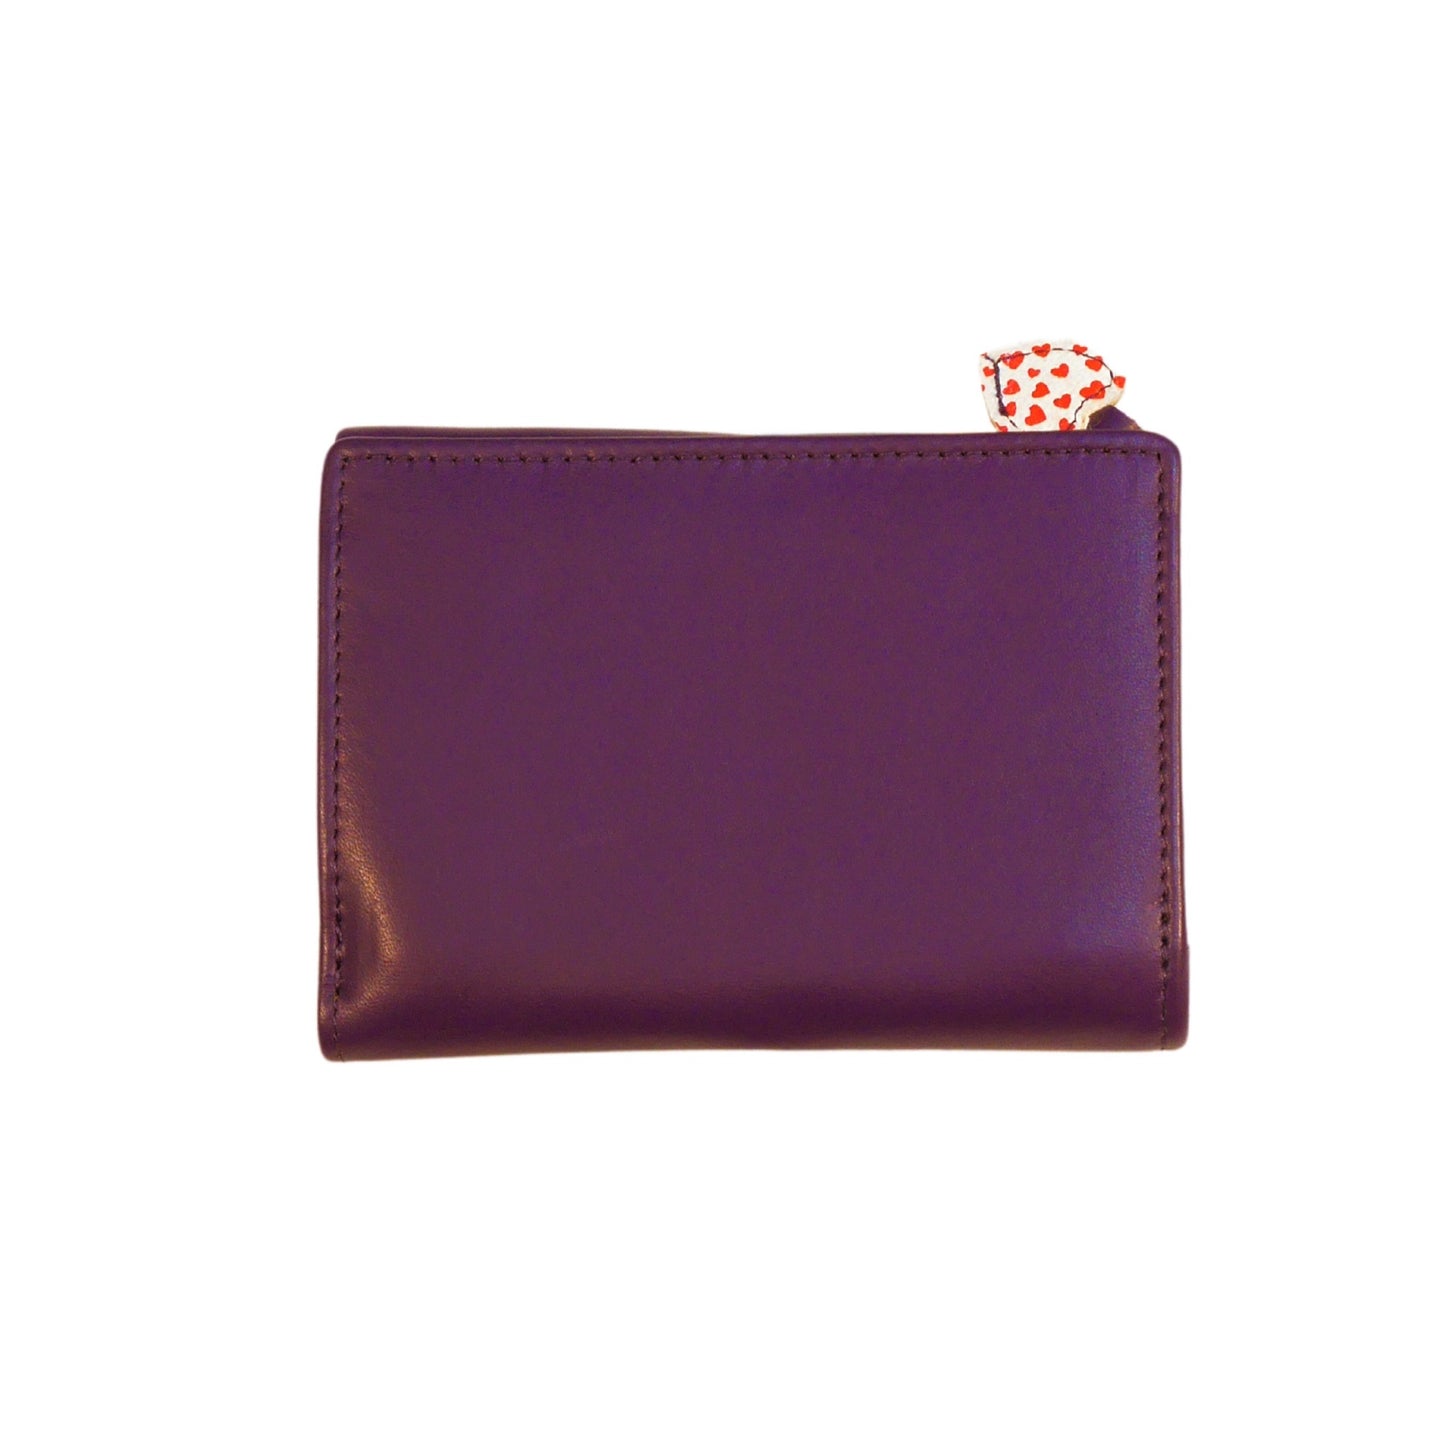 Lucy Tri-Fold Leather Purse - Purple